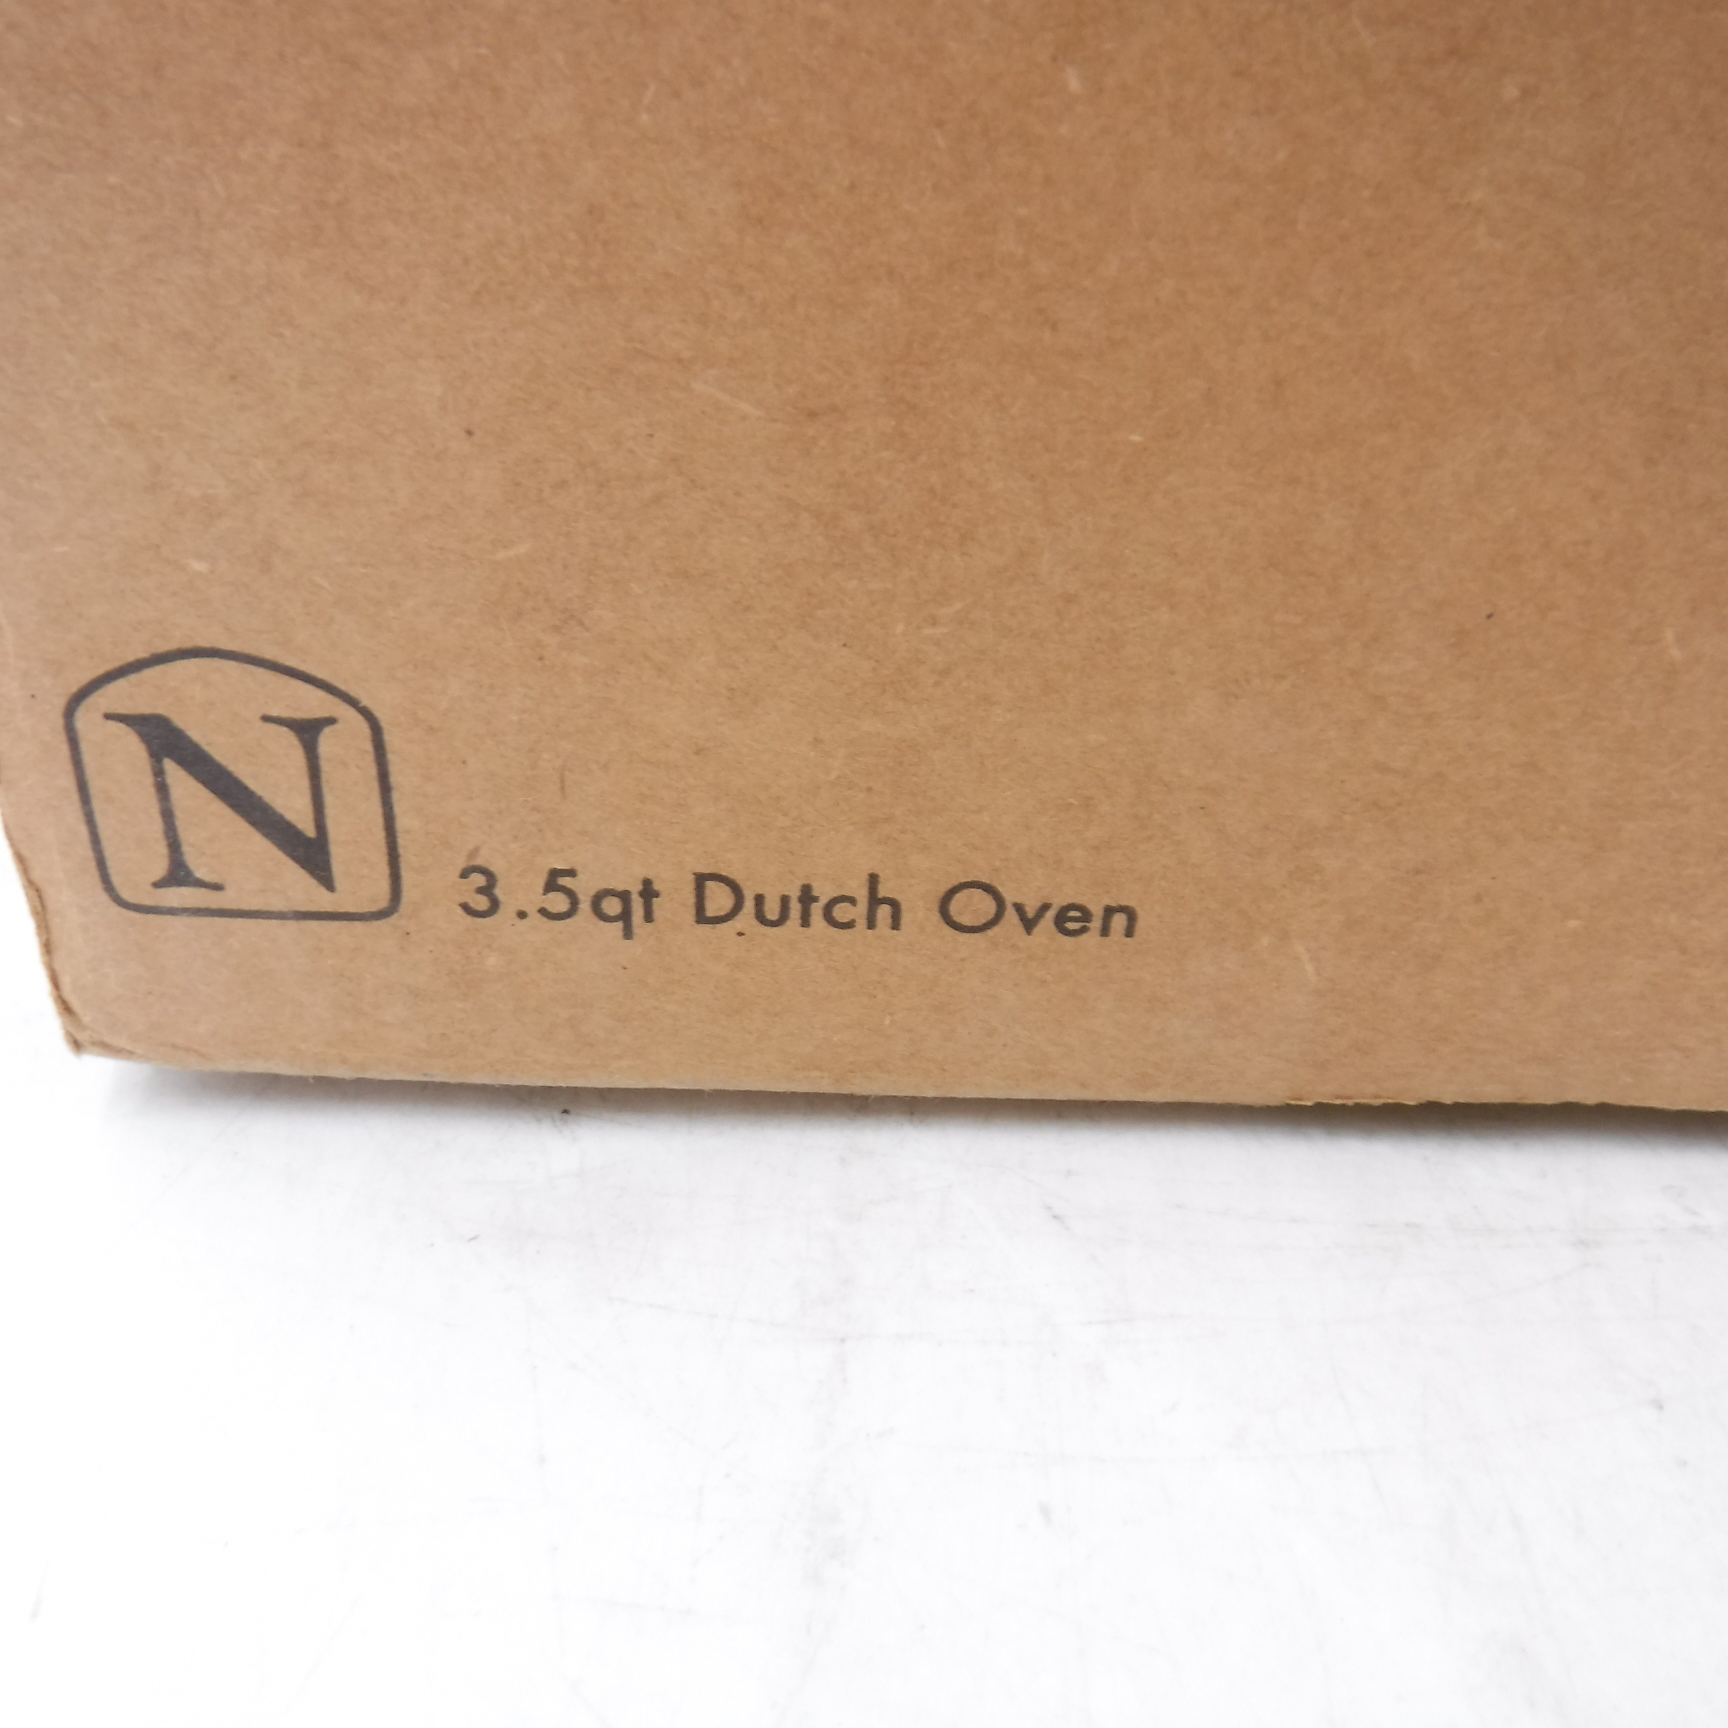 Nest Homeware Cast Iron Dutch Oven with Lid 3.5 qt